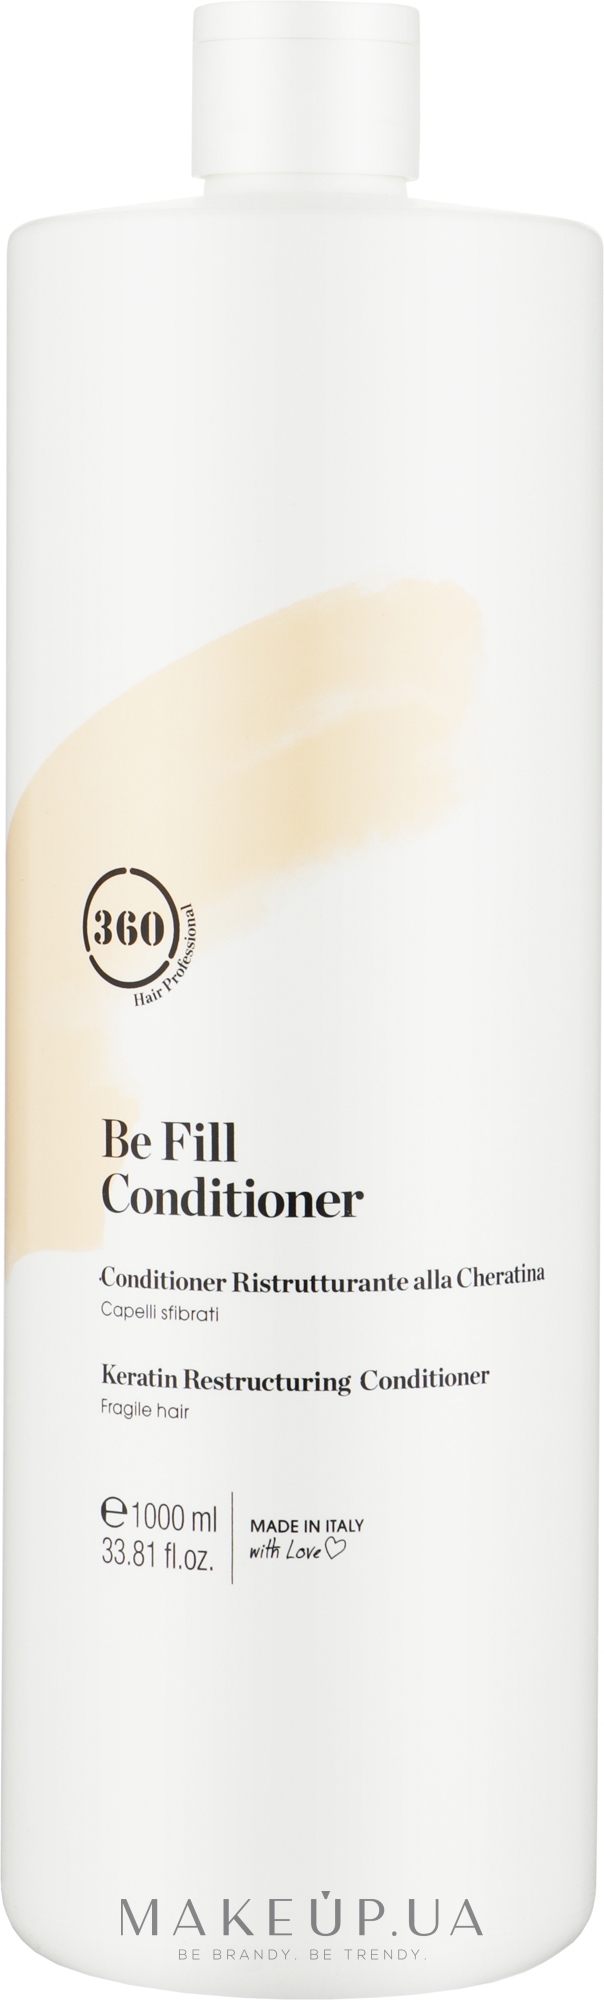 Питательный кондиционер для волос с кератином - 360 Be Fill Conditioner — фото 1000ml